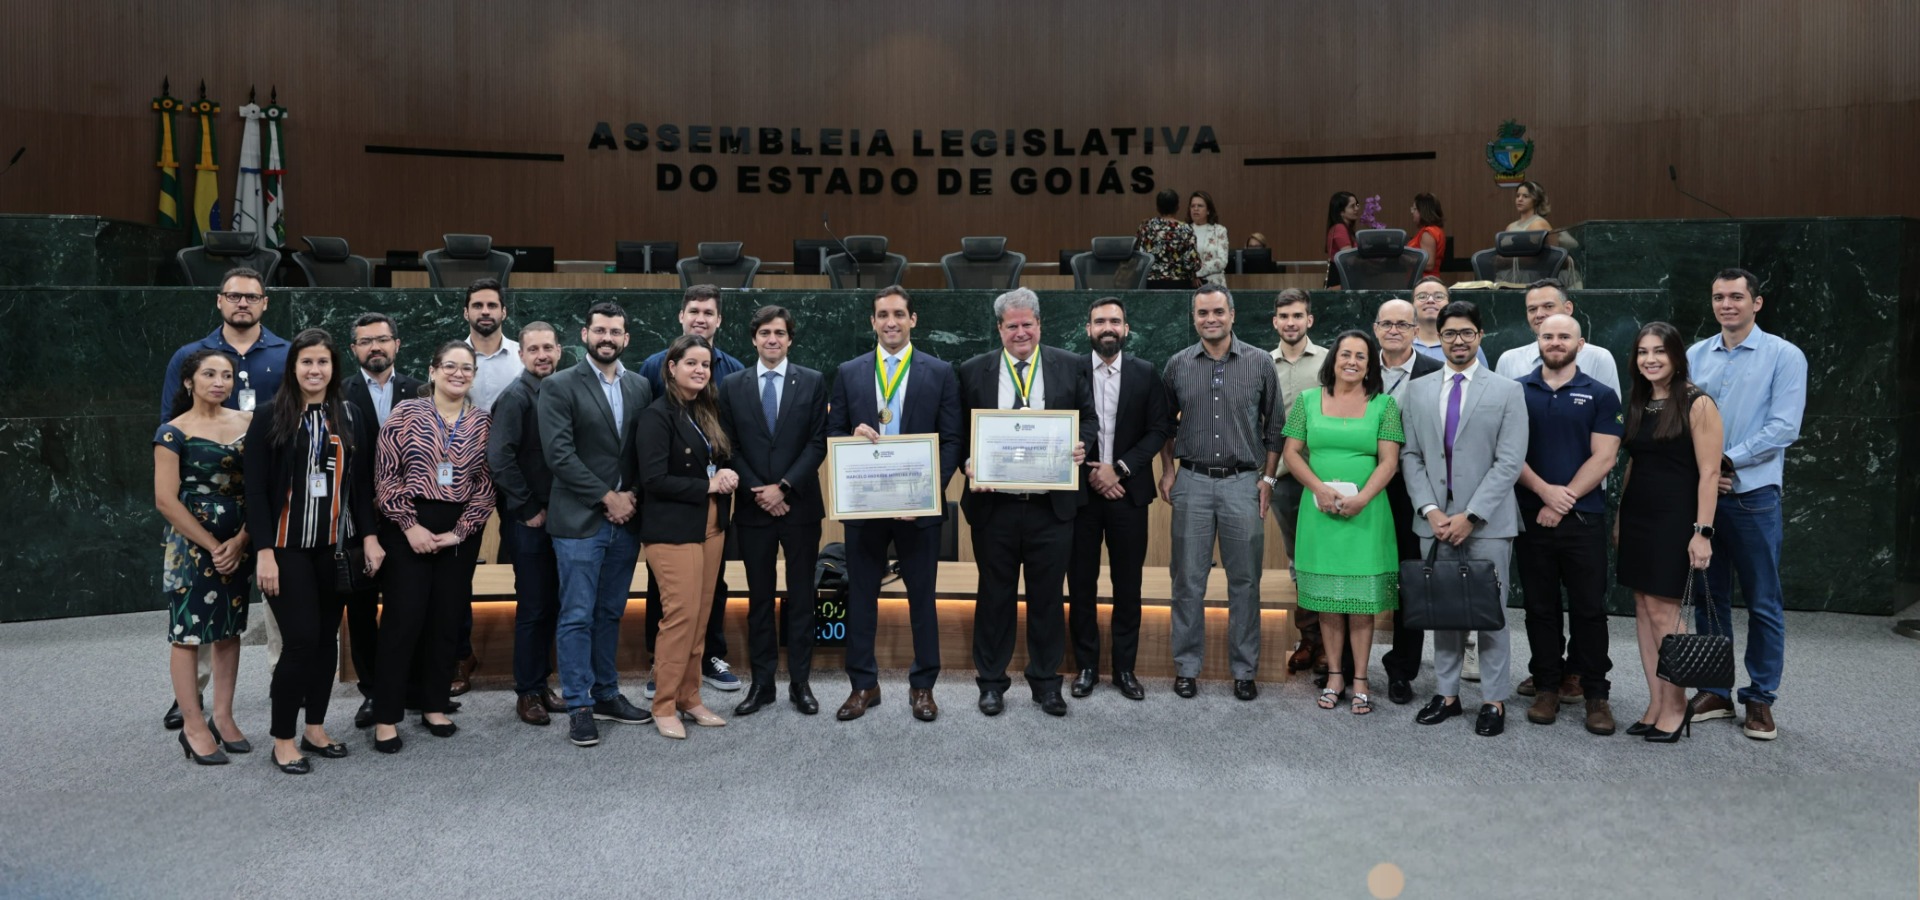 Assembleia Legislativa de Goiás faz homenagem aos 50 anos da Codevasf 2.jpeg